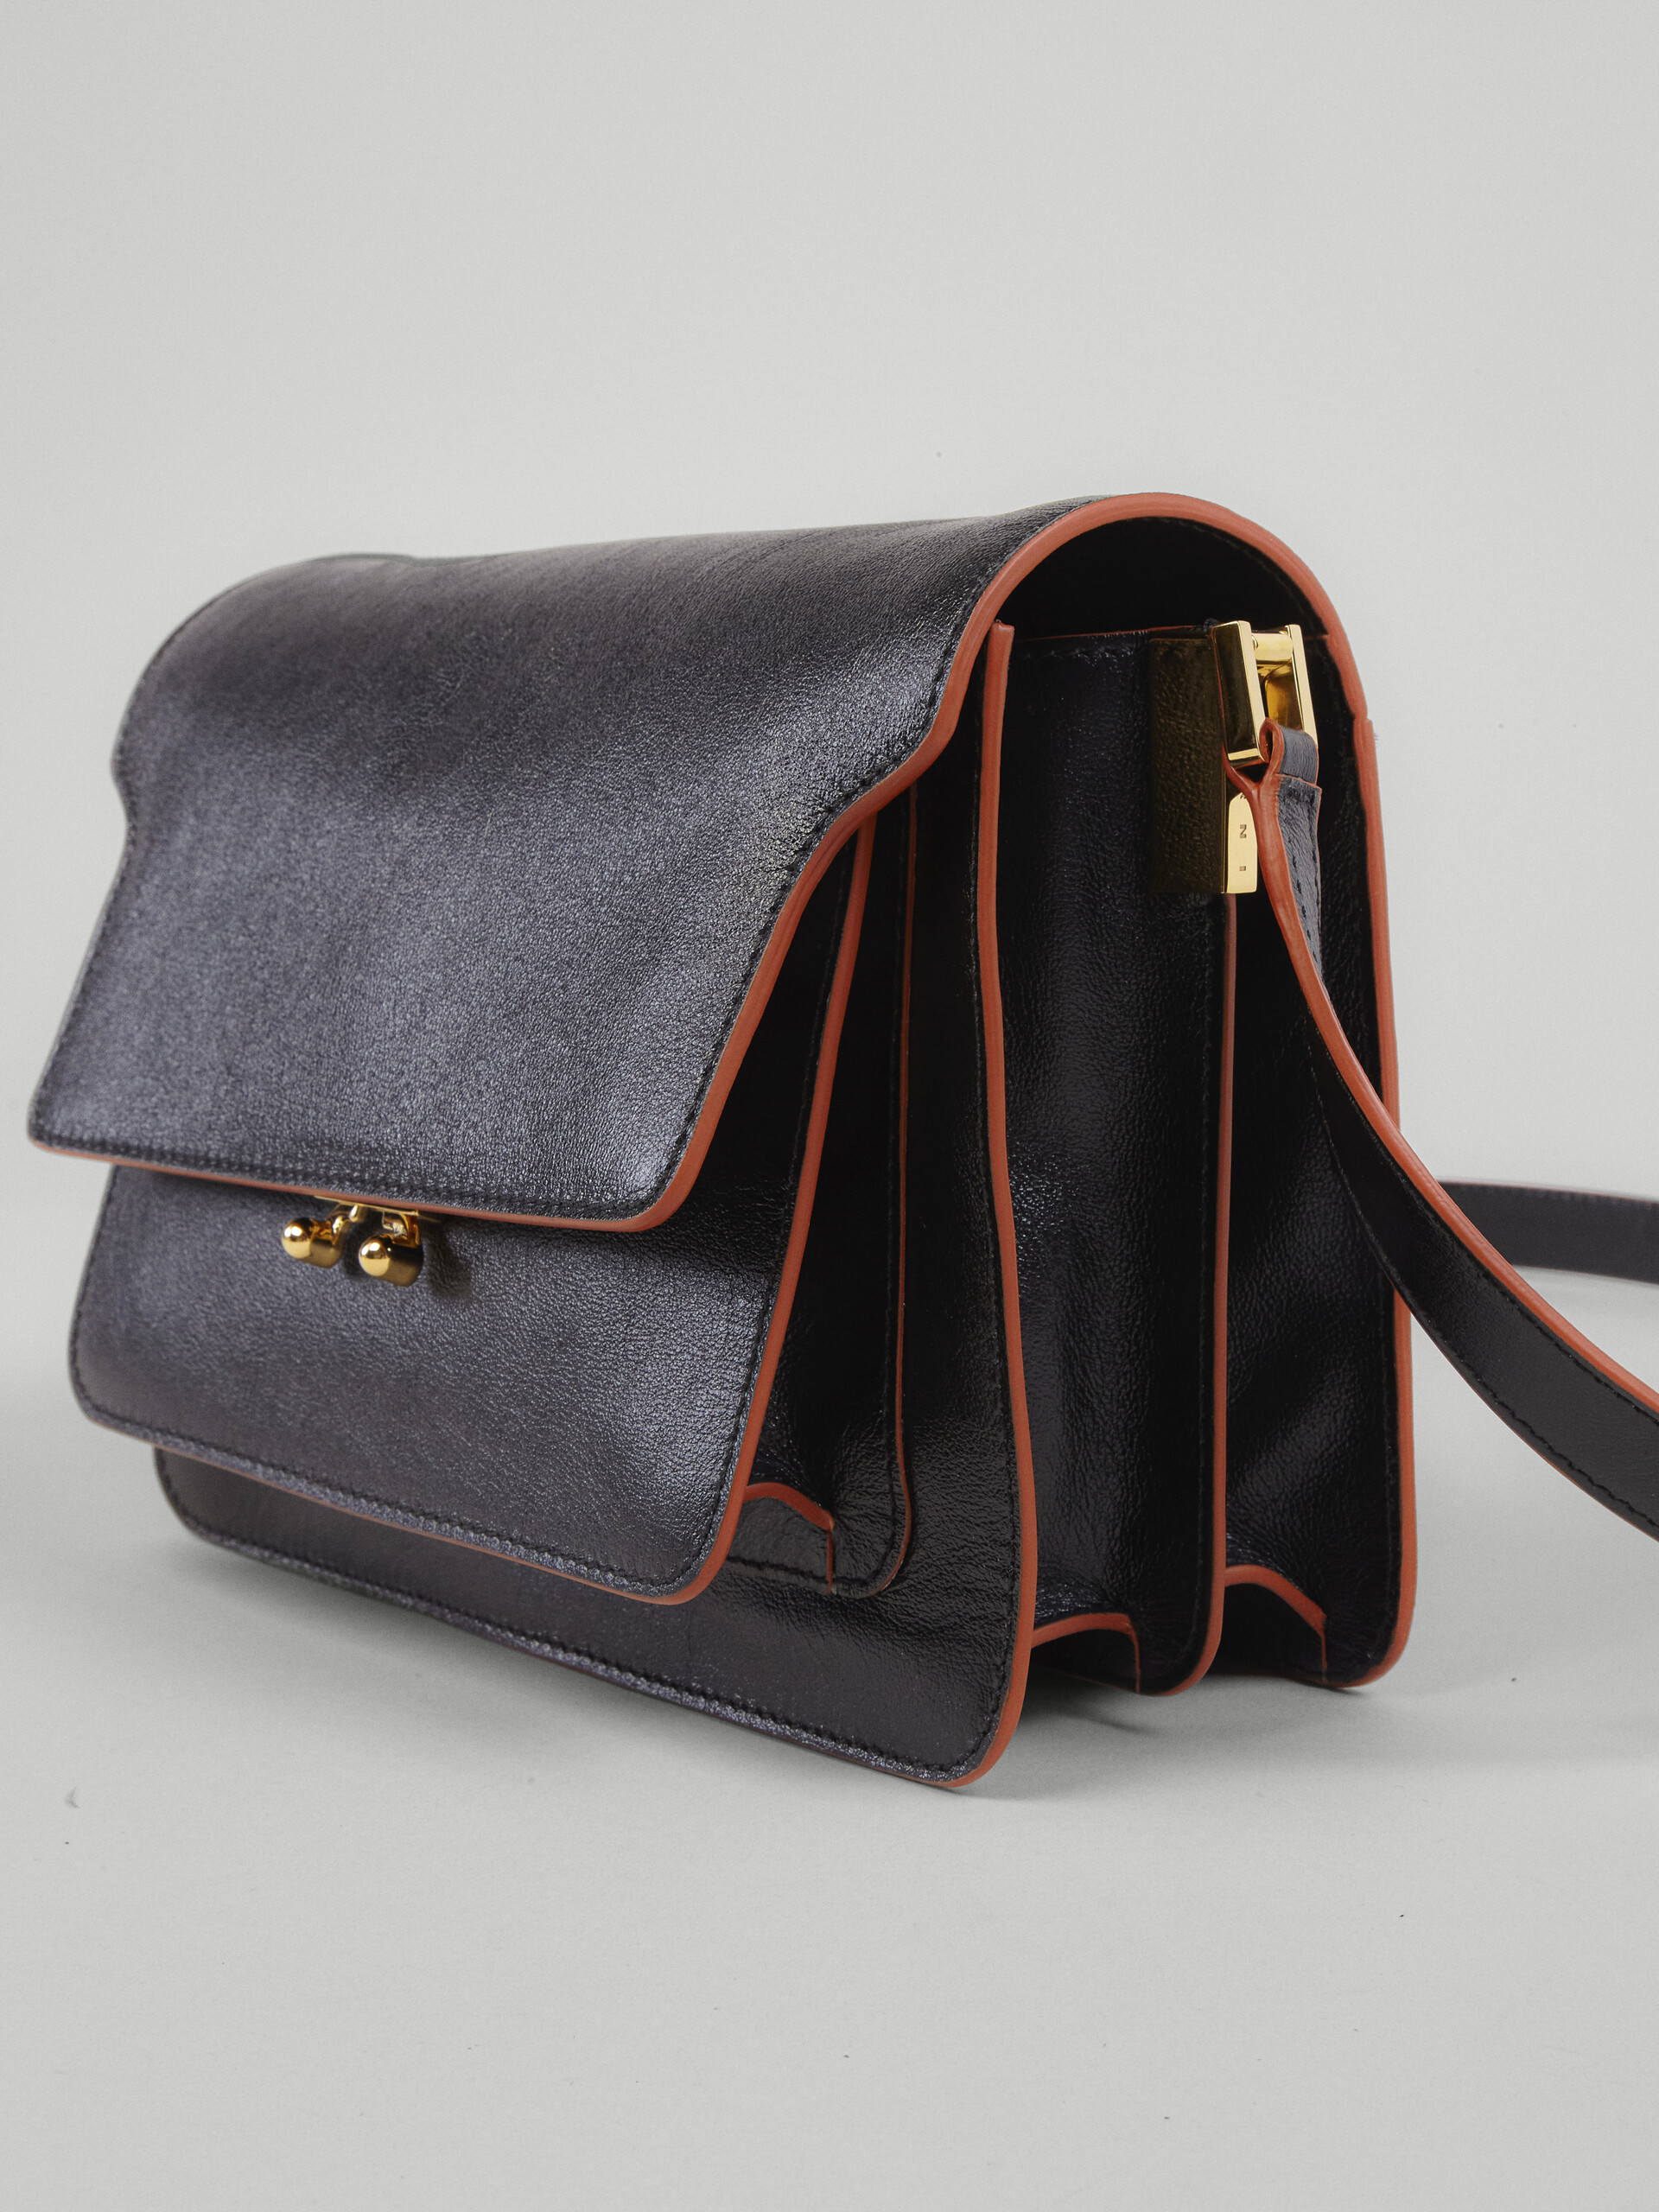 TRUNK SOFT medium bag in black leather - Shoulder Bag - Image 4